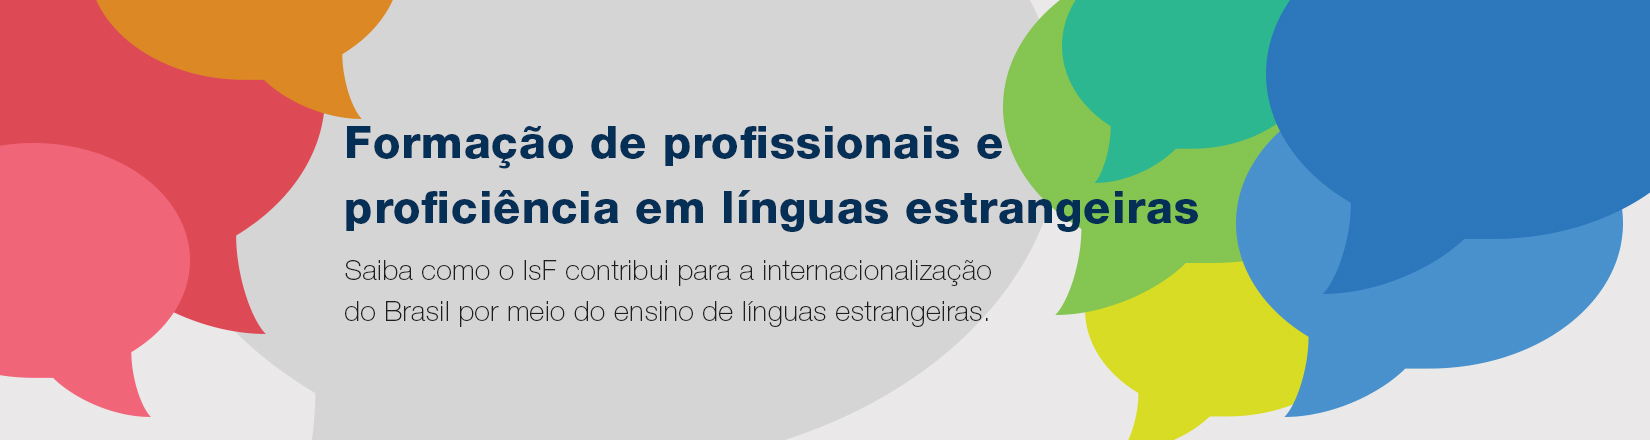 Formação de profissionais e proficiência em línguas estrangeiras